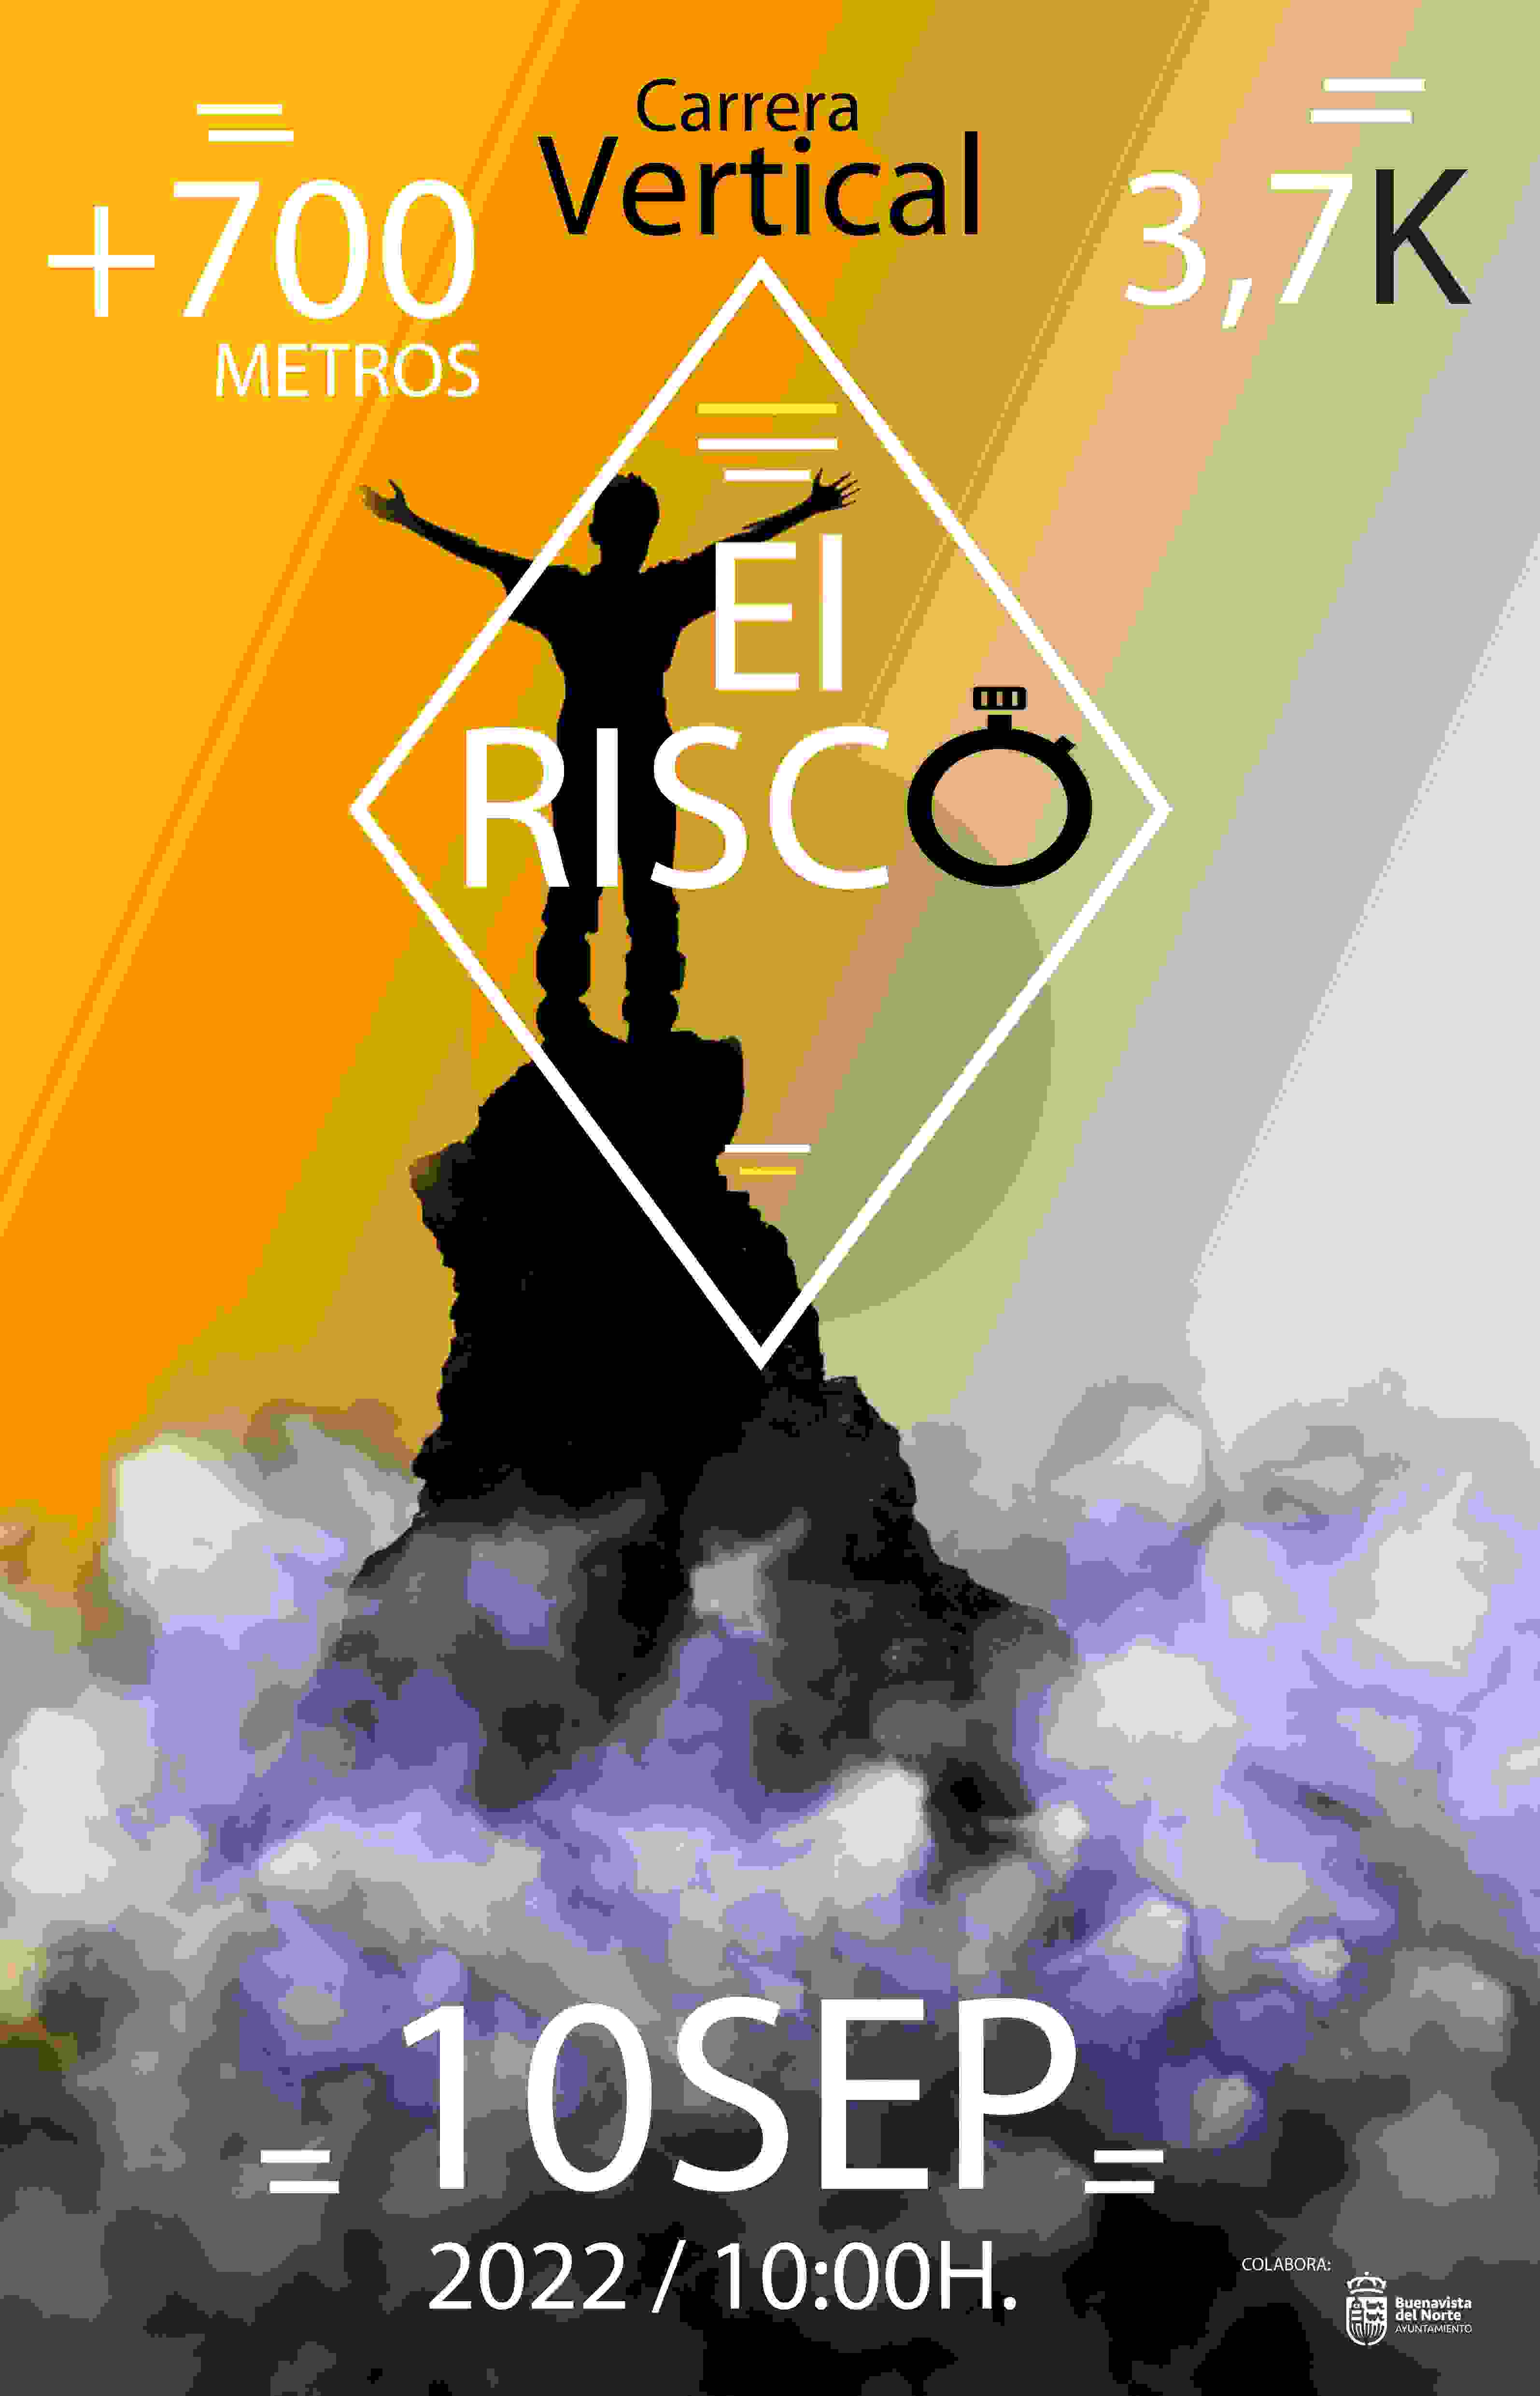 CARRERA VERTICAL EL RISCO 2023 - Register